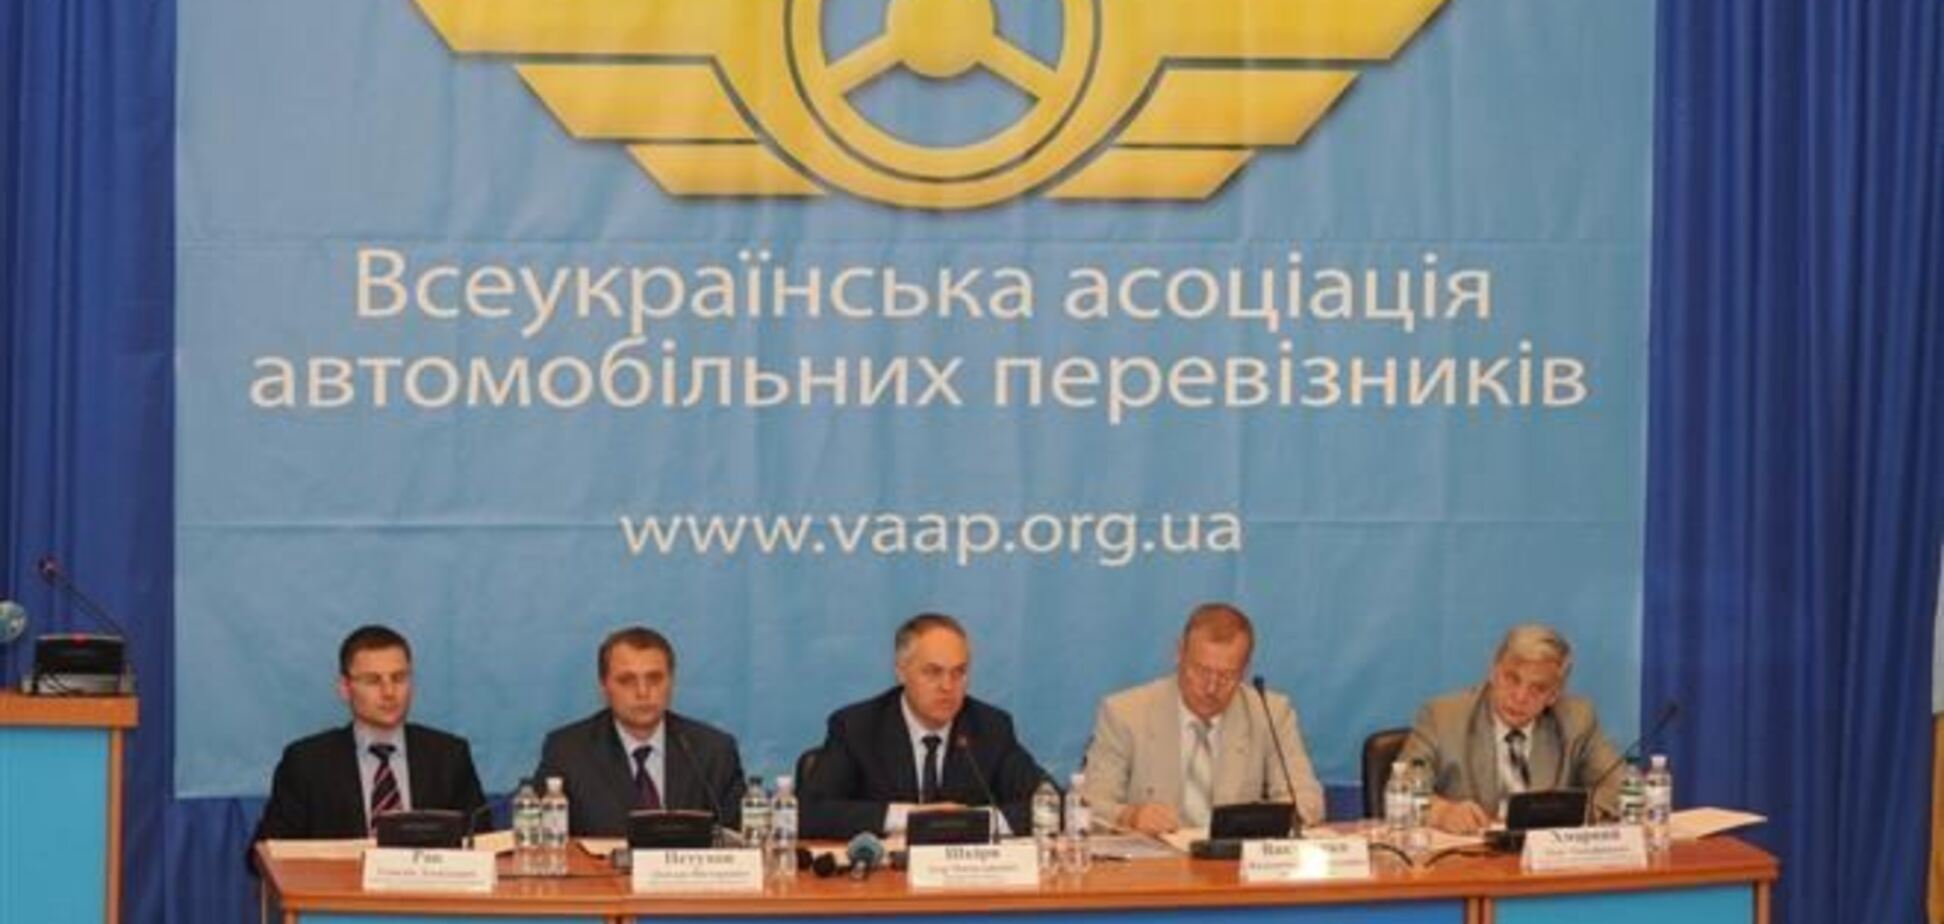 Ассоциация автомобильных перевозчиков Украины соболезнует семьям погибшим в ДТП на Сумщине